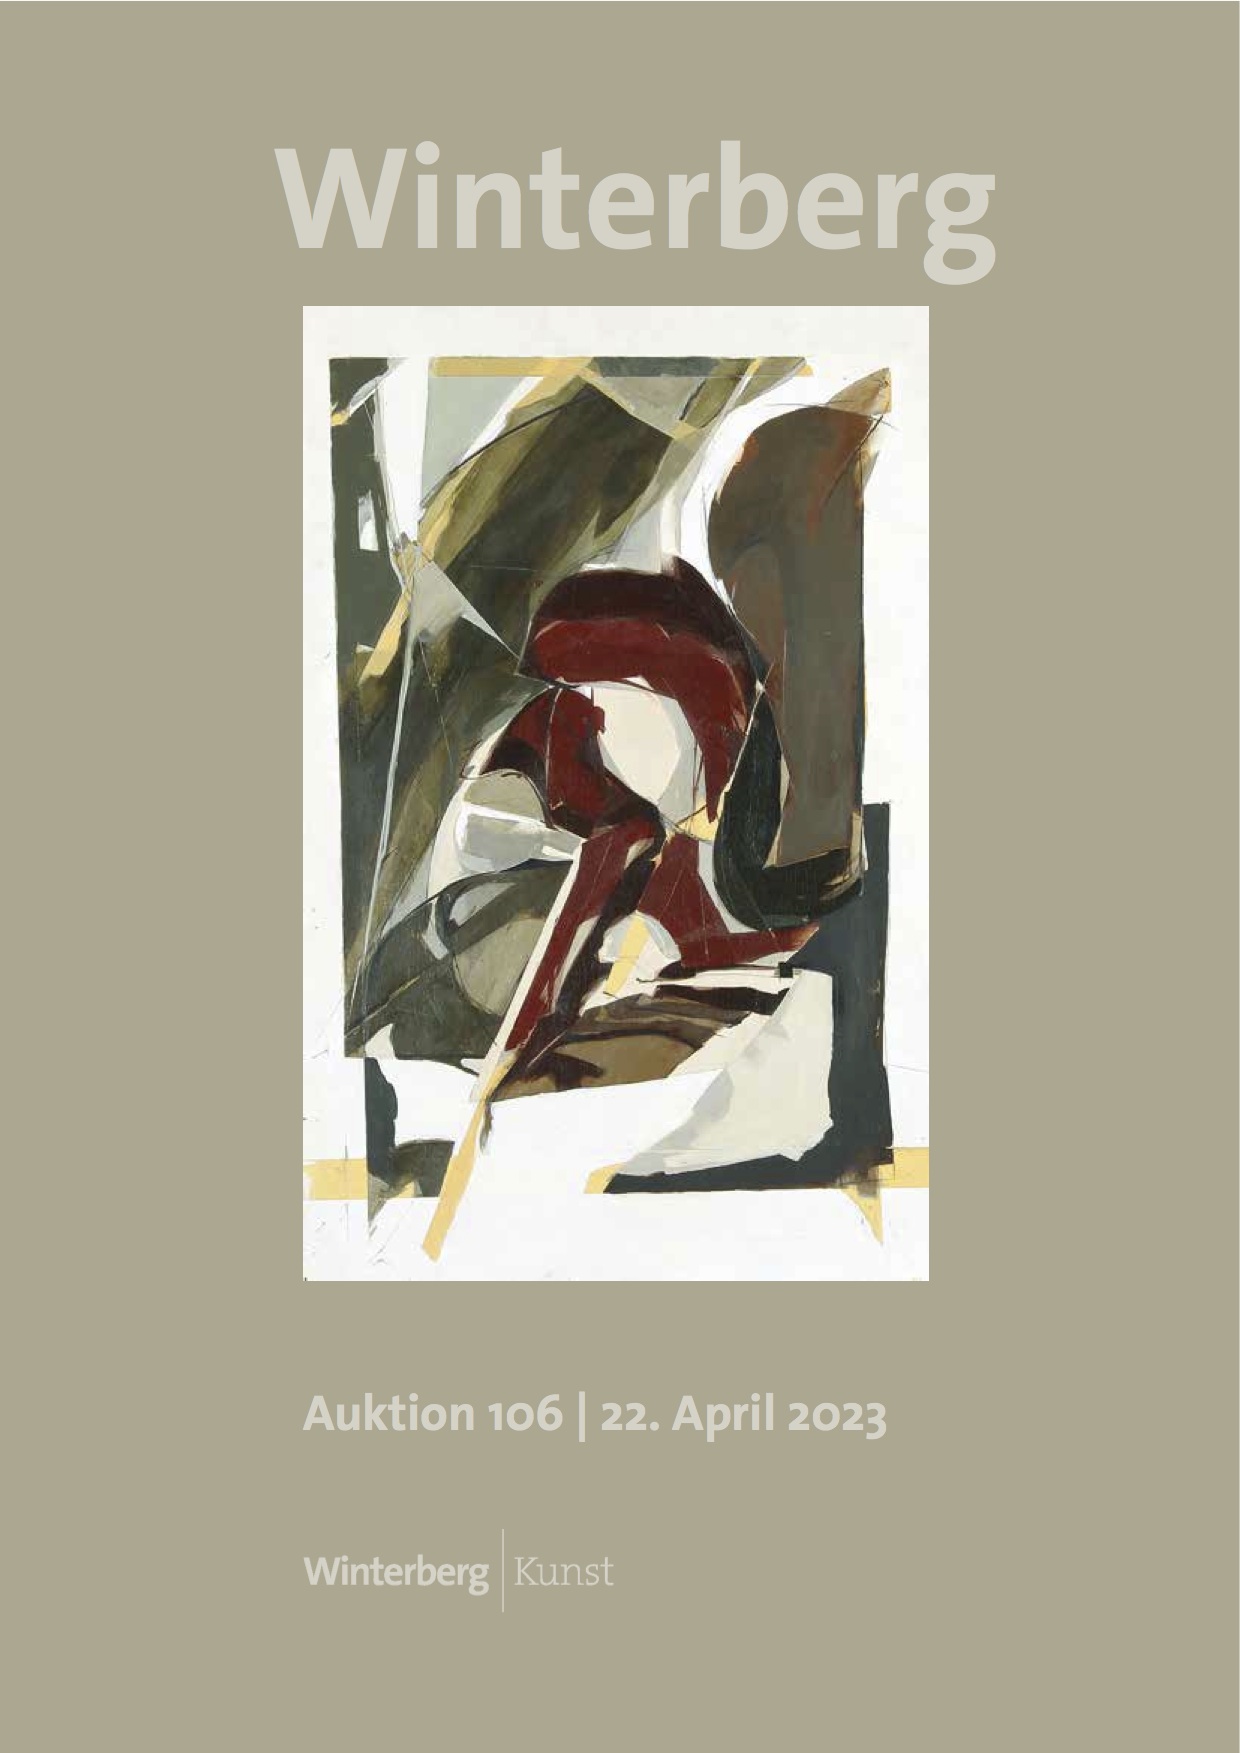 Auktion 106 – April 2023